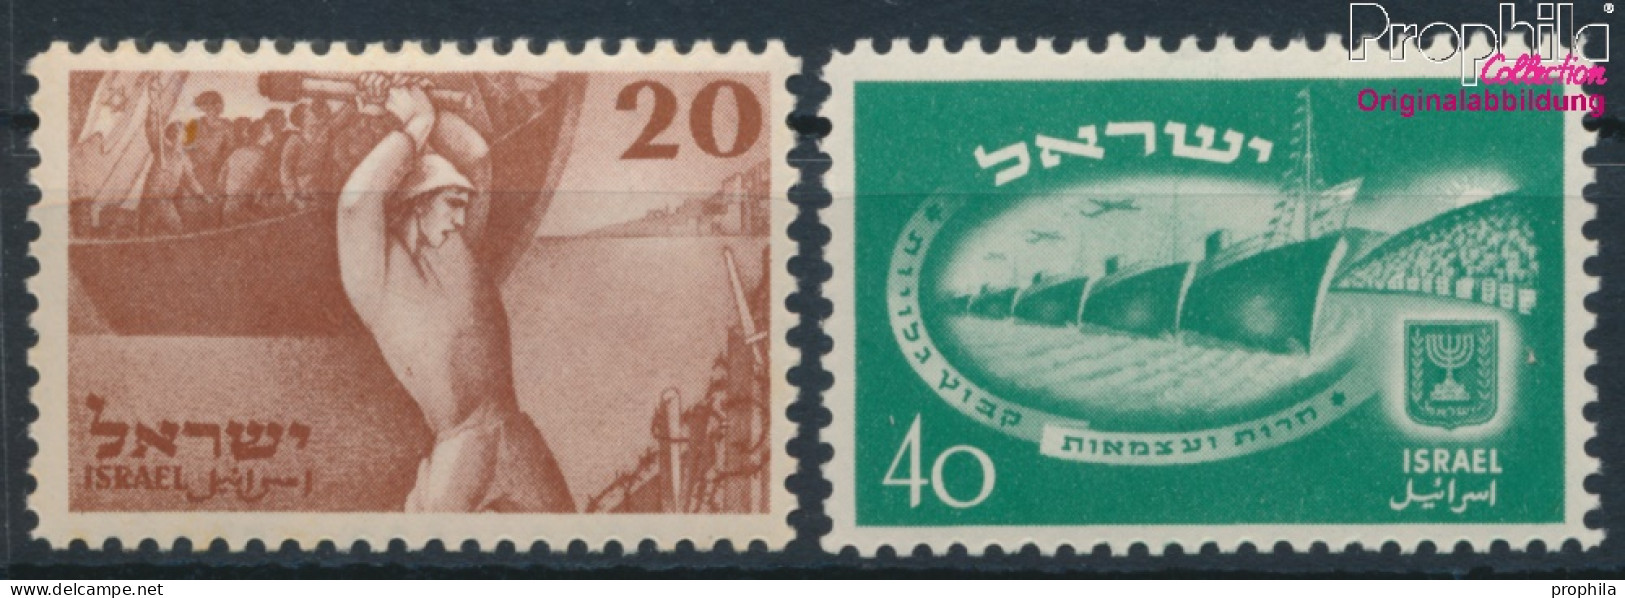 Israel 30-31 (kompl.Ausg.) Postfrisch 1950 Unabhängigkeit (10301377 - Ungebraucht (ohne Tabs)